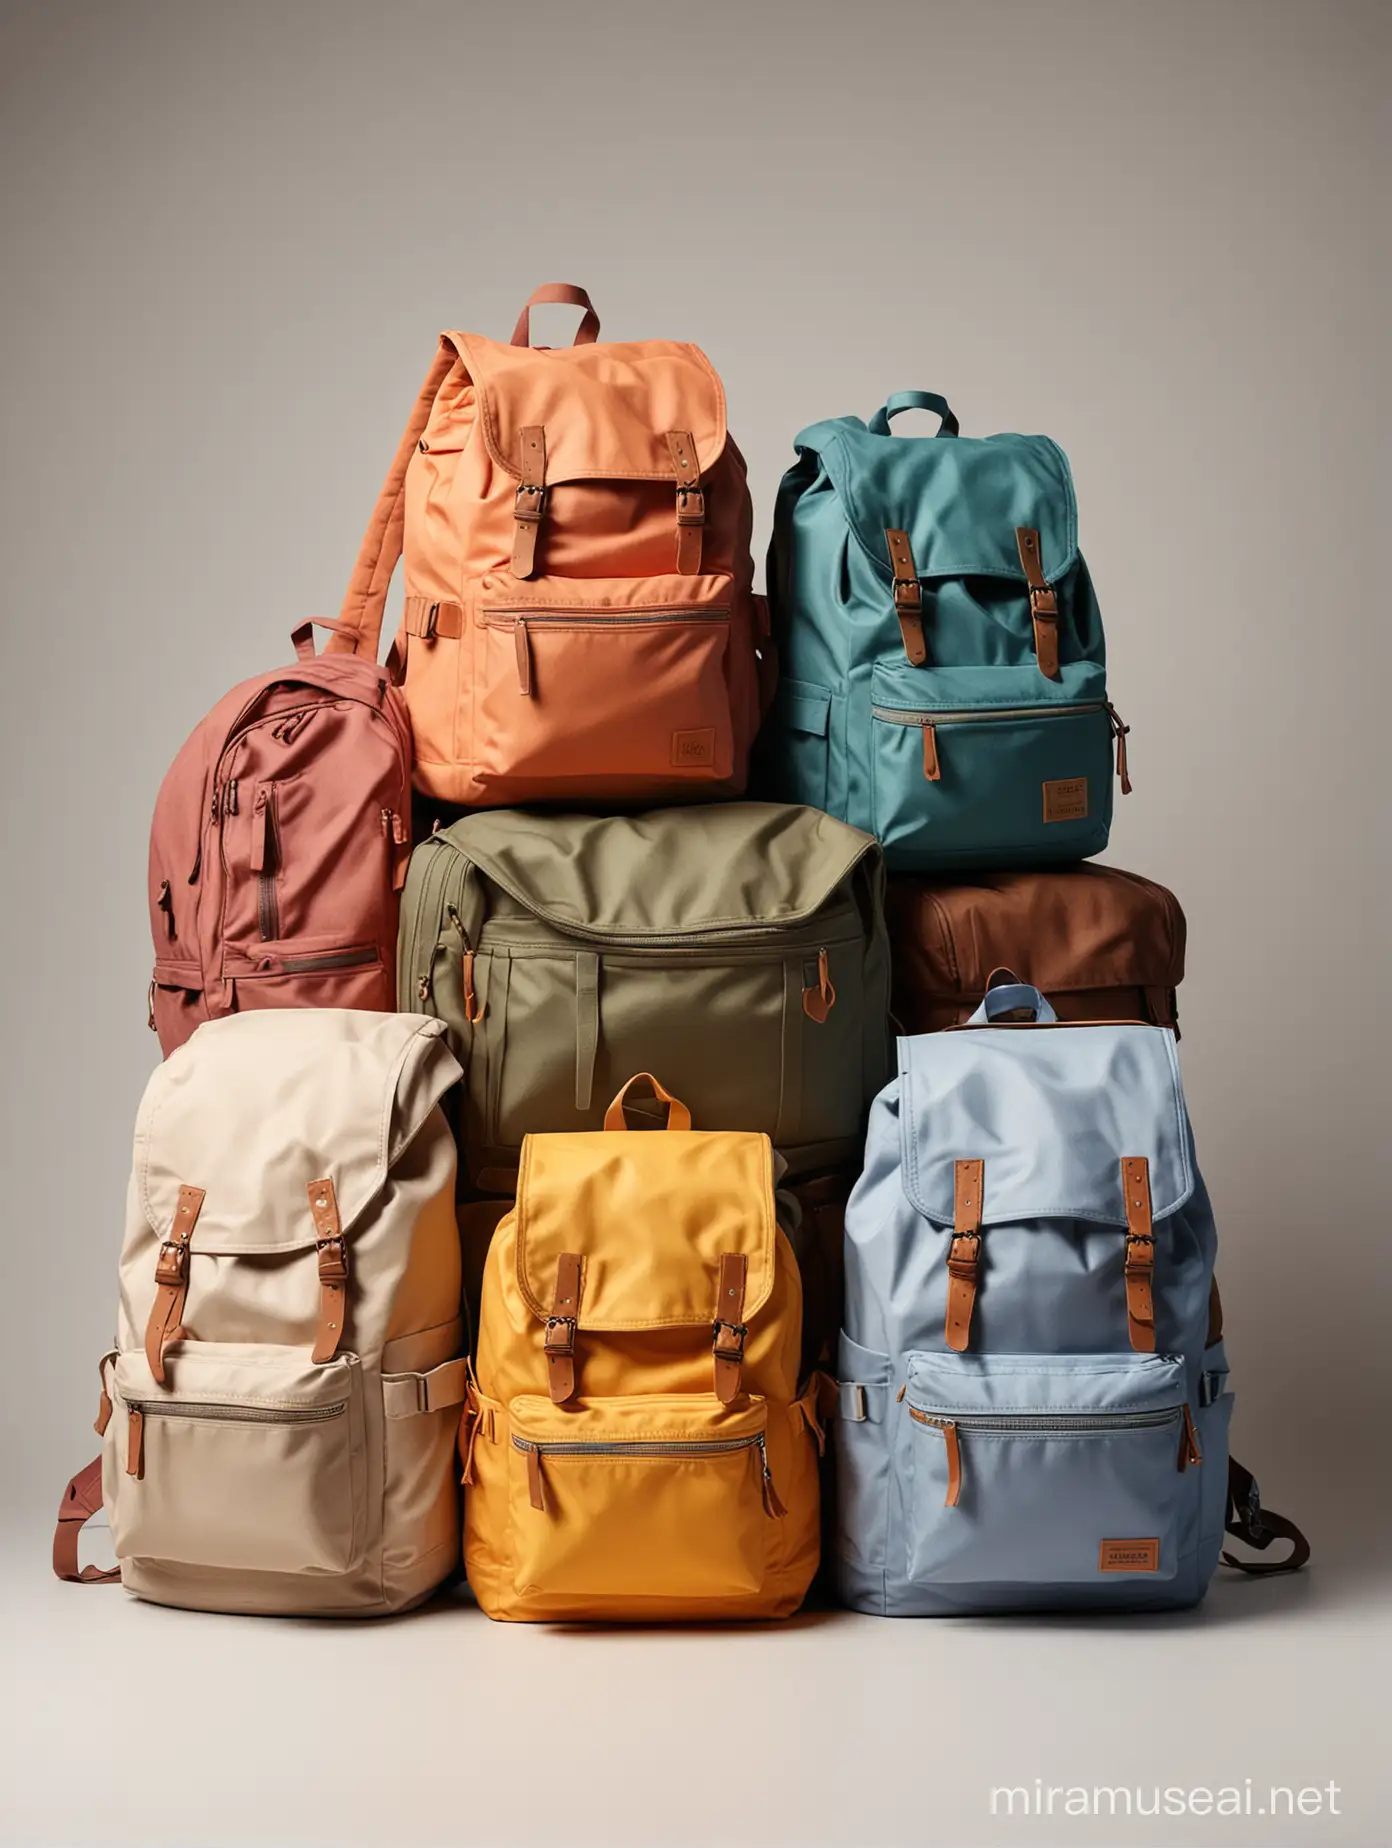 4 backpacks on light background